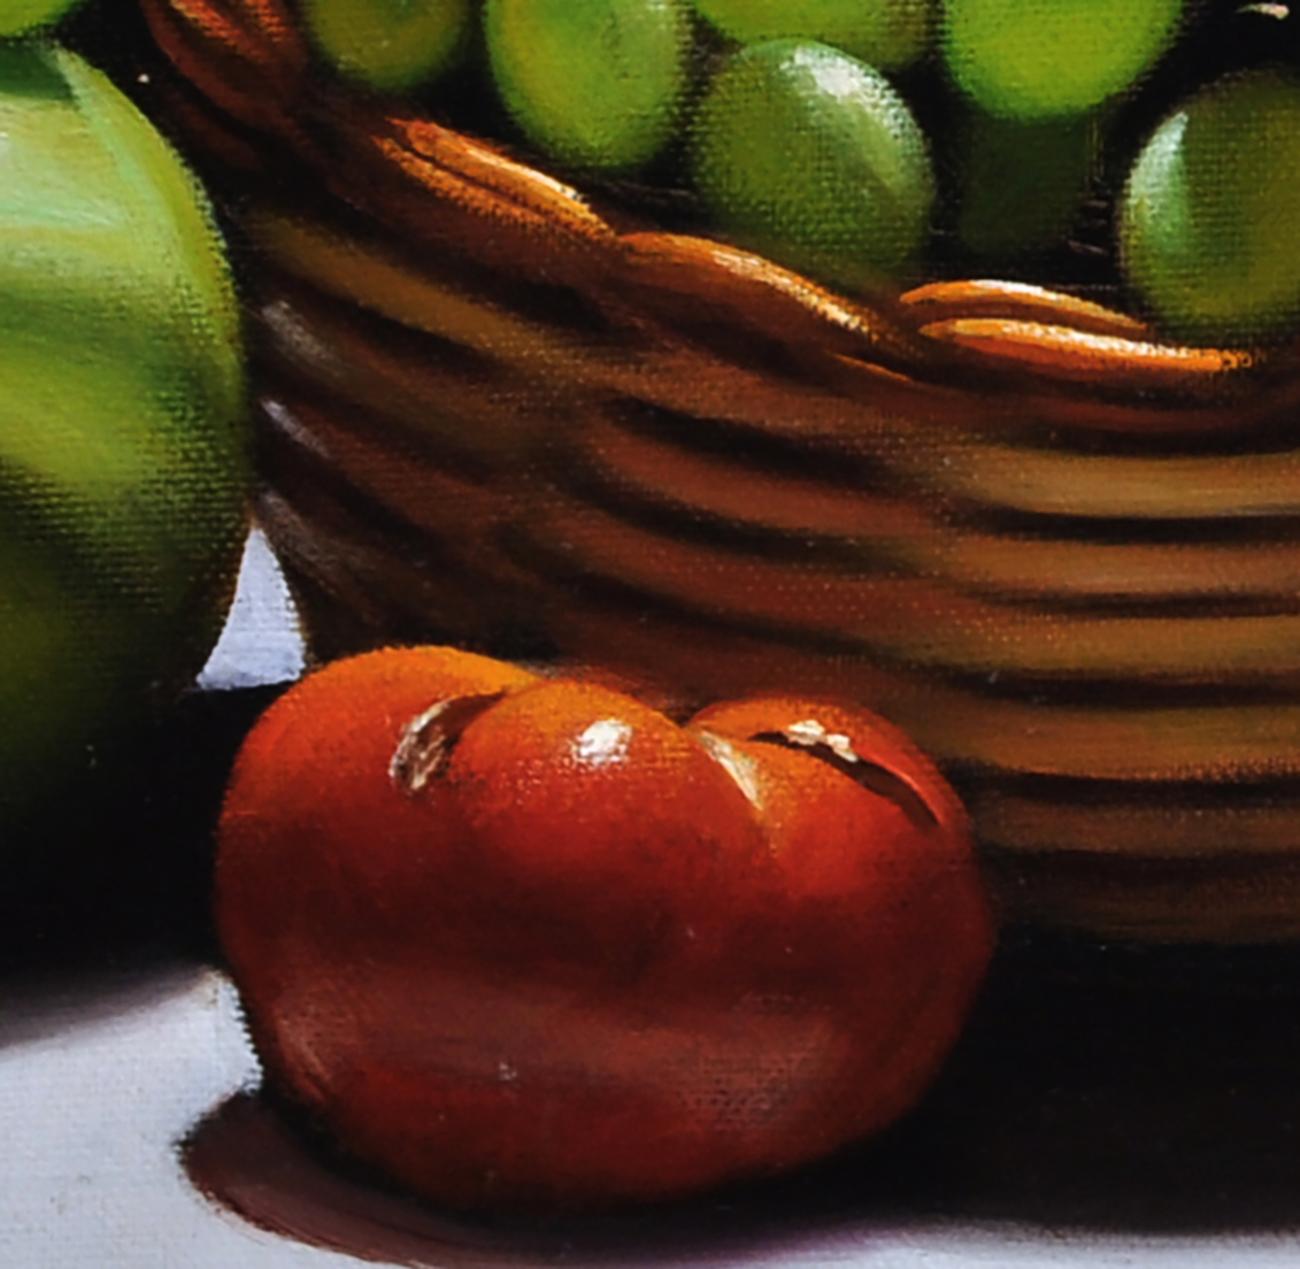 Corbeille avec fruits - Maximilian Ciccone Italia 2011 - Huile sur toile cm.40x50.
Cette peinture à l'huile sur toile est un exemple incroyable de la capacité de l'artiste à capturer des détails et une lumière à couper le souffle avec la plus grande